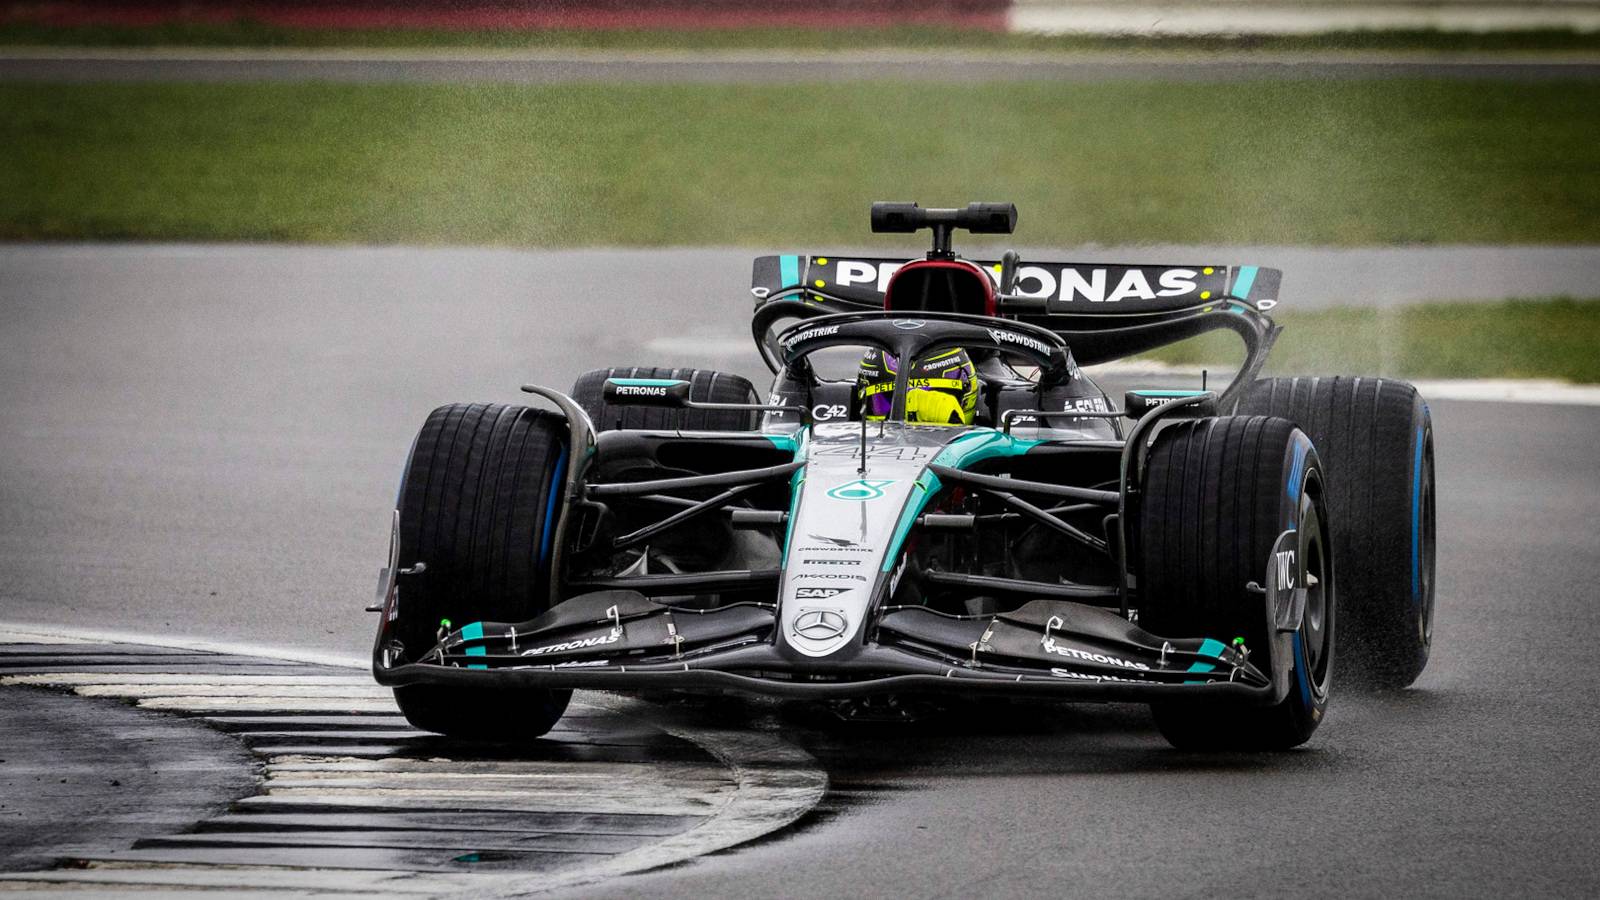 Formula 1 Lewis Hamilton Official Announcements LAST MINUTE Mercedes His Replacement